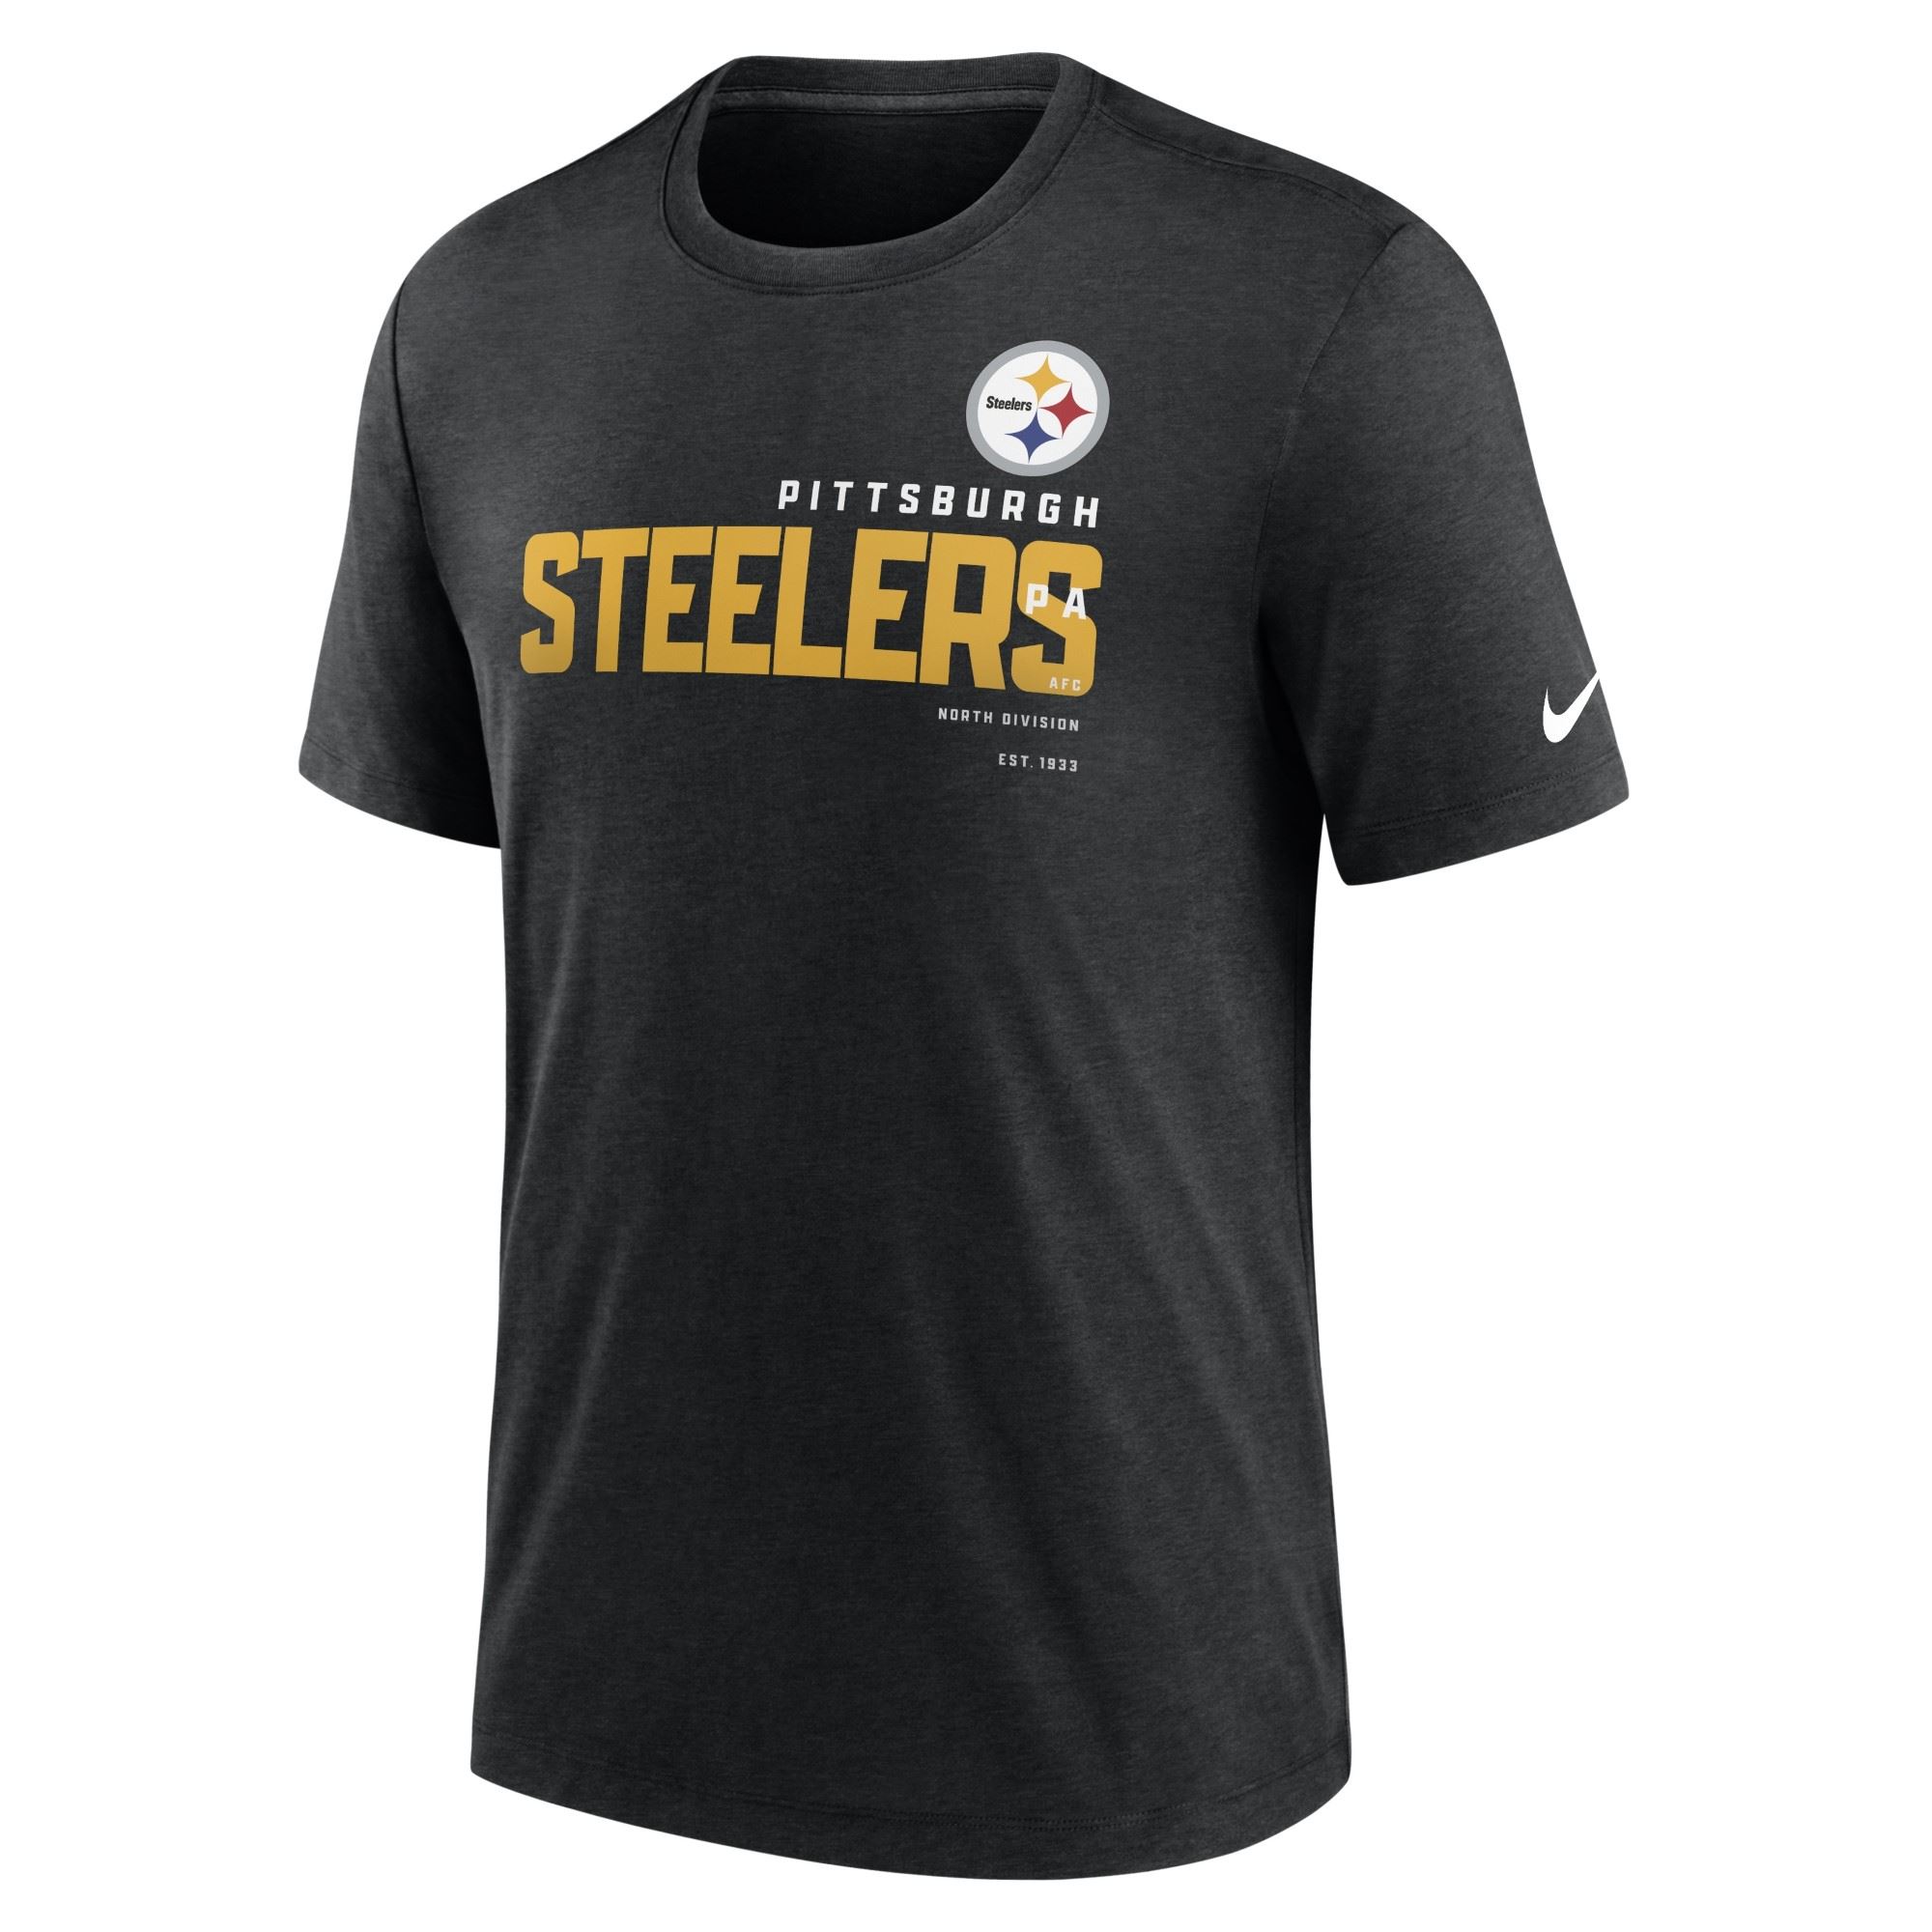 Pittsburgh Steelers NFL Triblend Team Name Black Heather T-Shirt Nike